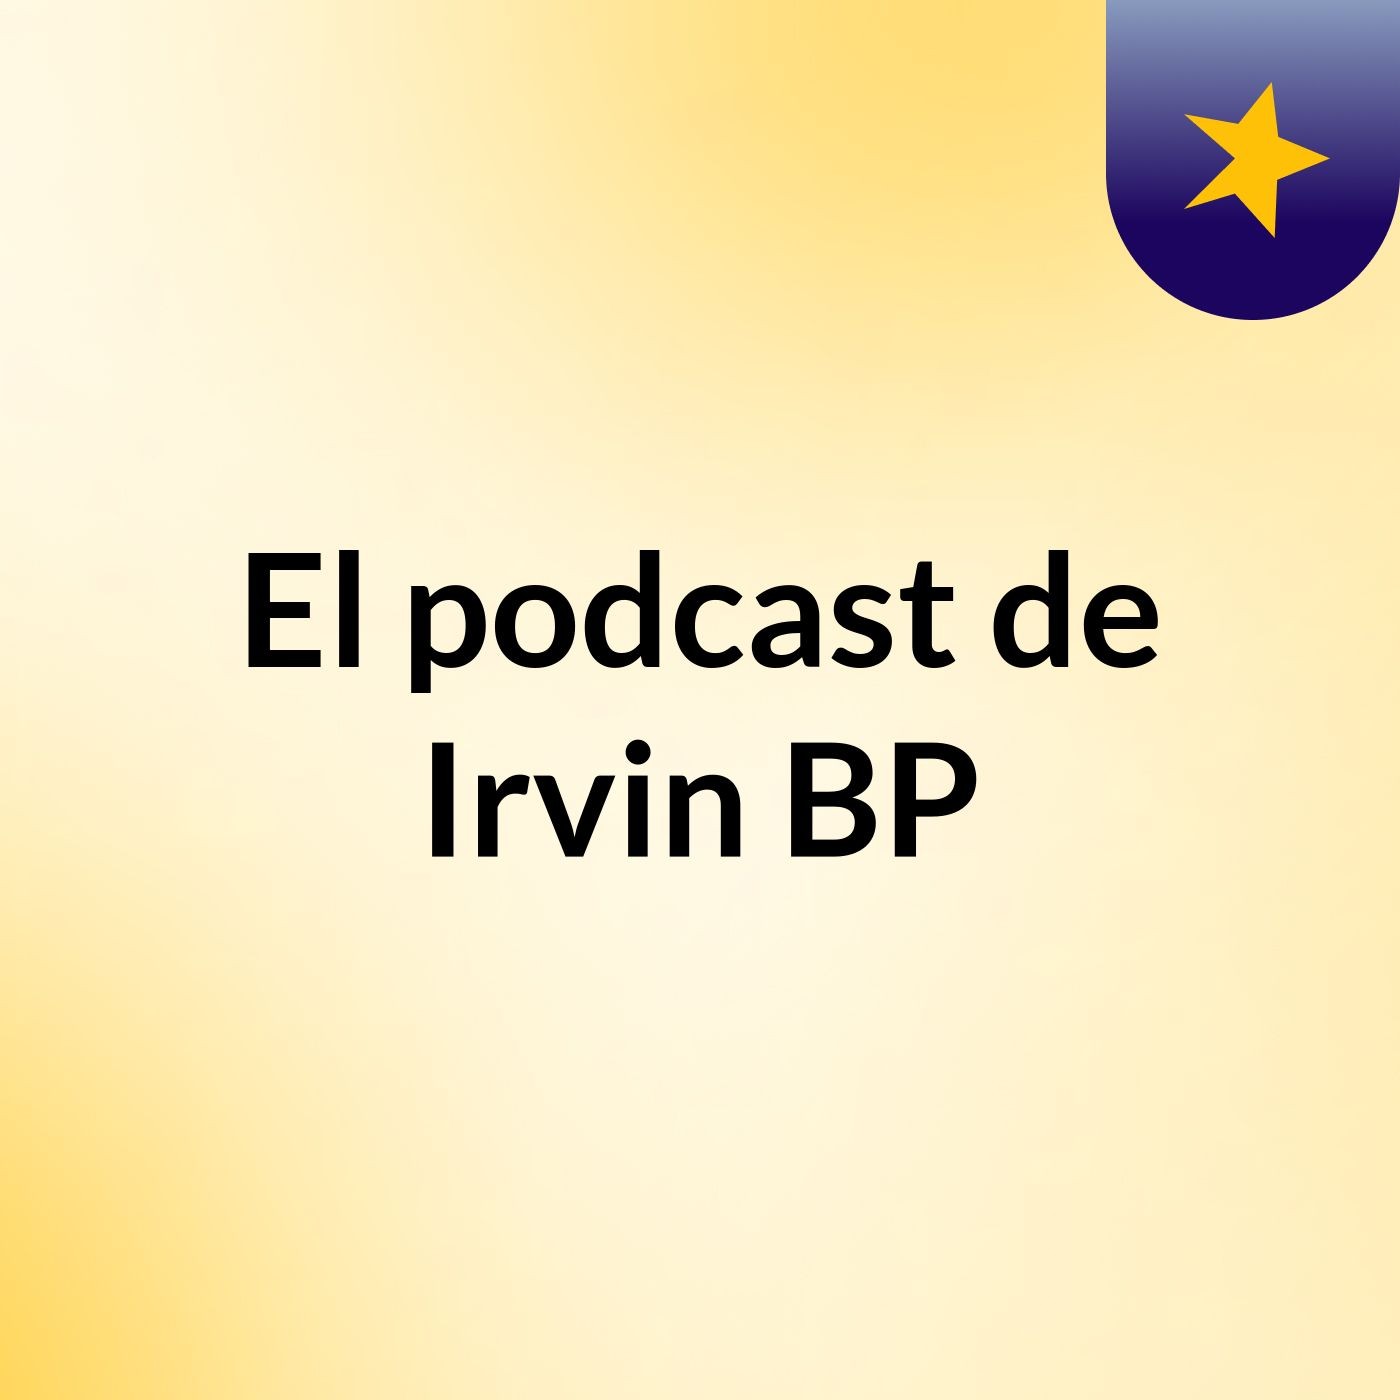 Episodio 4 - El podcast de Irvin BP